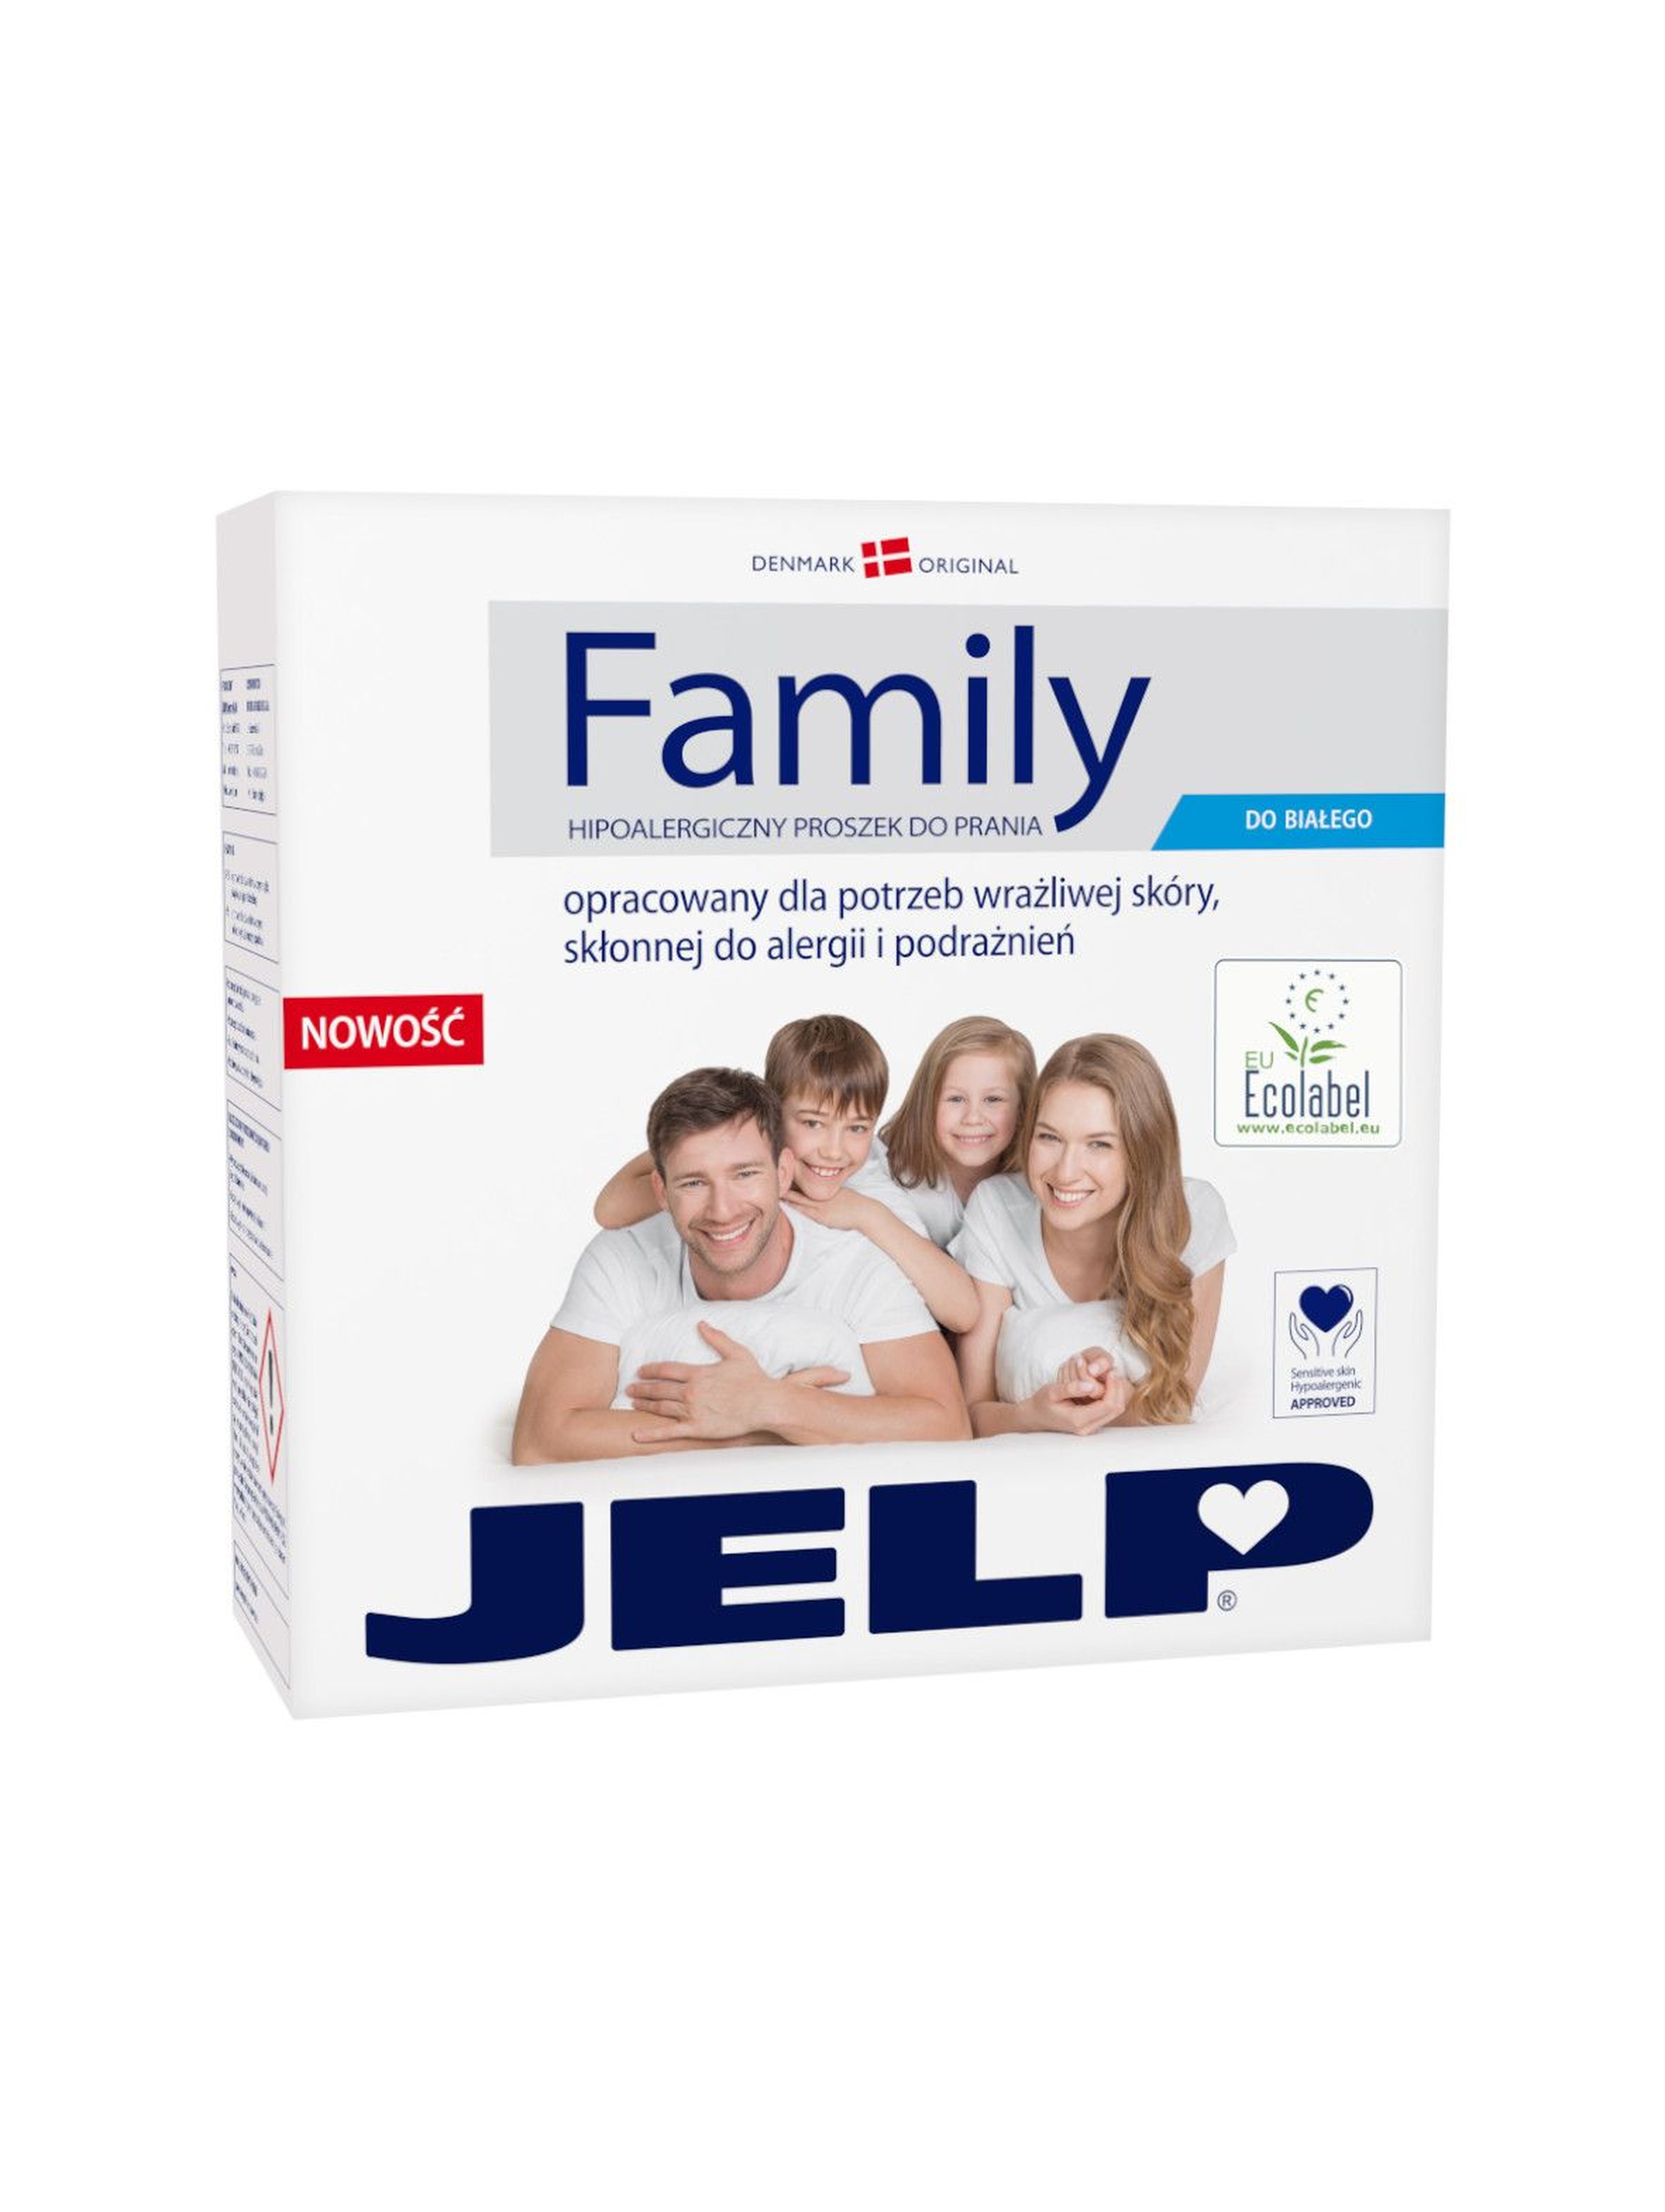 JELP Family Proszek 2,24kg do białego - certyfikat Ecolabel